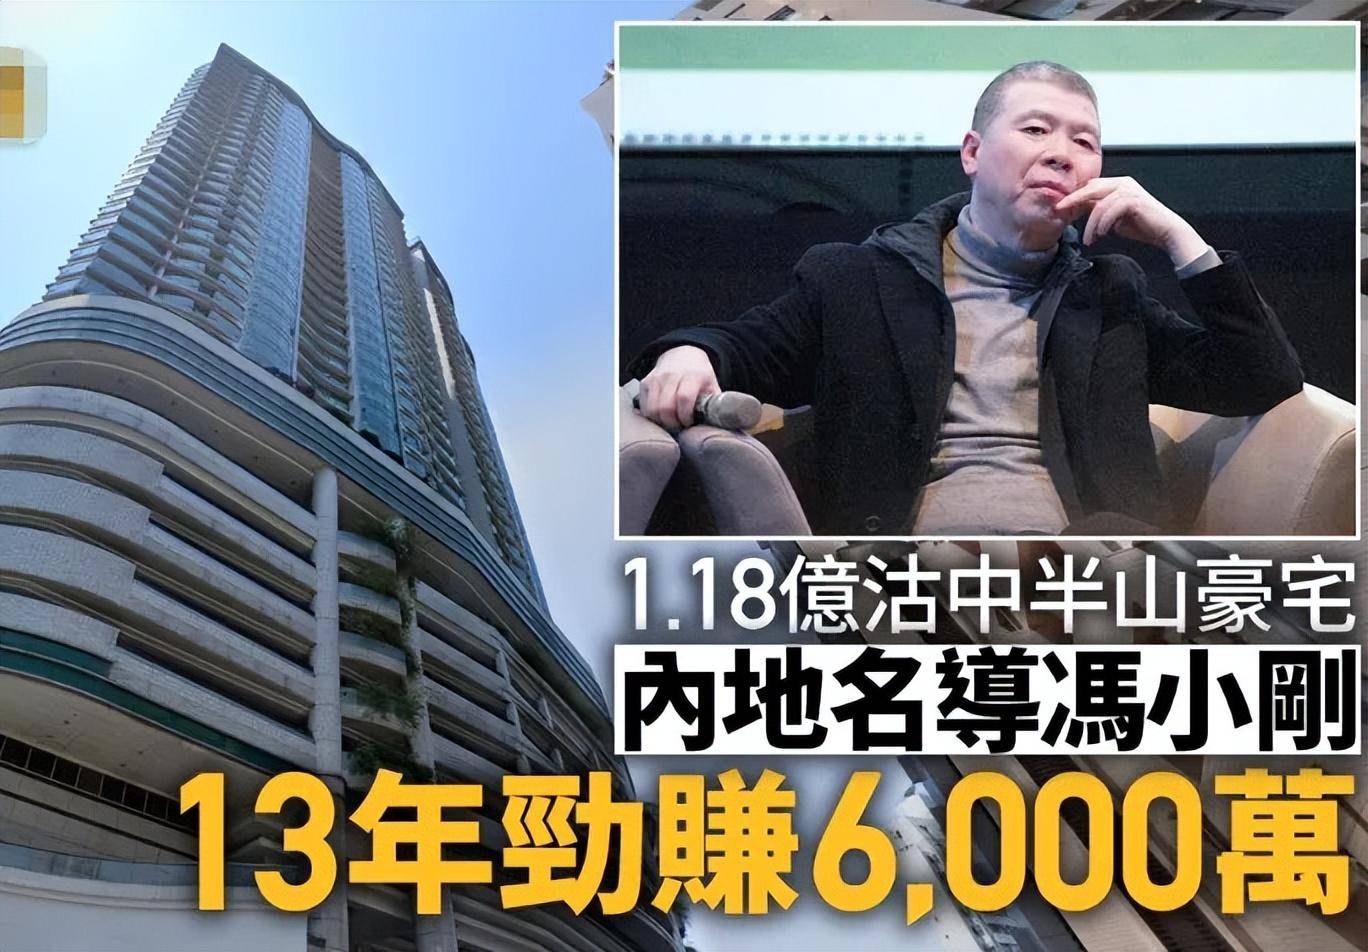 冯小刚夫妇趁势出售香港豪宅,13年前5800万购入,现如今卖1